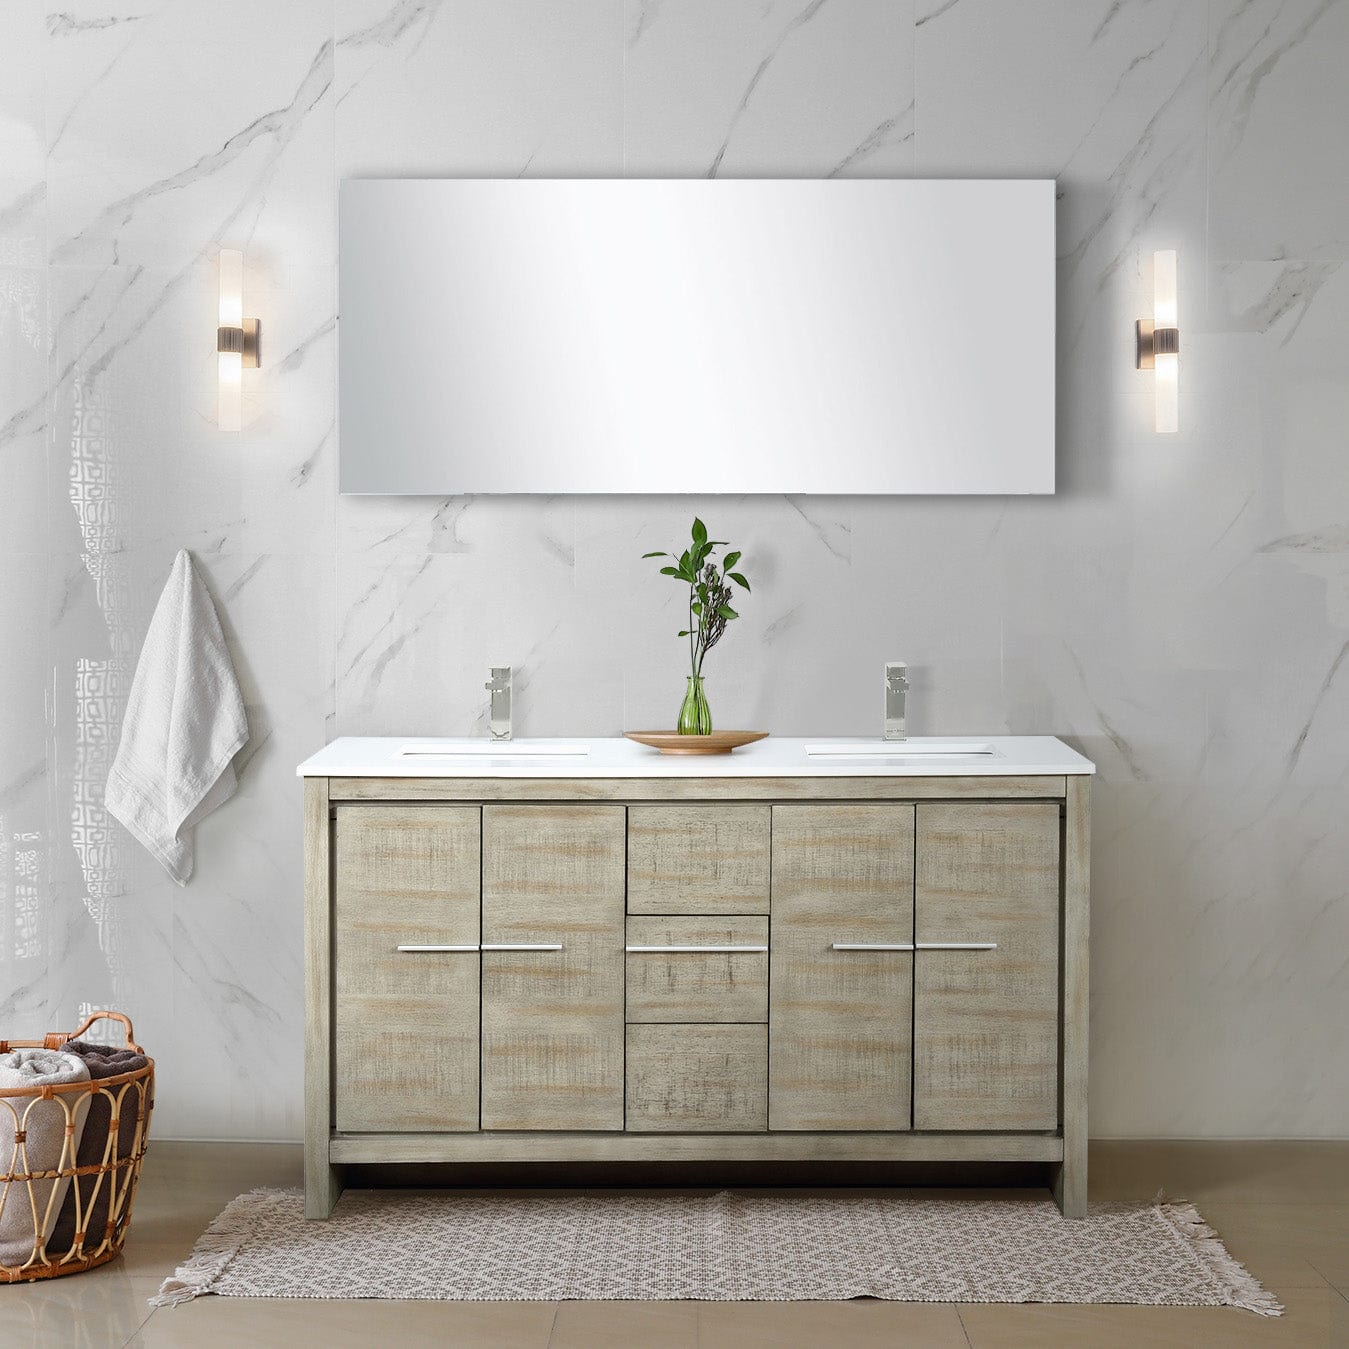 Lexora Bathroom Vanity Cultured Marble / No Faucet / No Mirror Lafarre 60" Rustic Acacia Double Bathroom Vanity